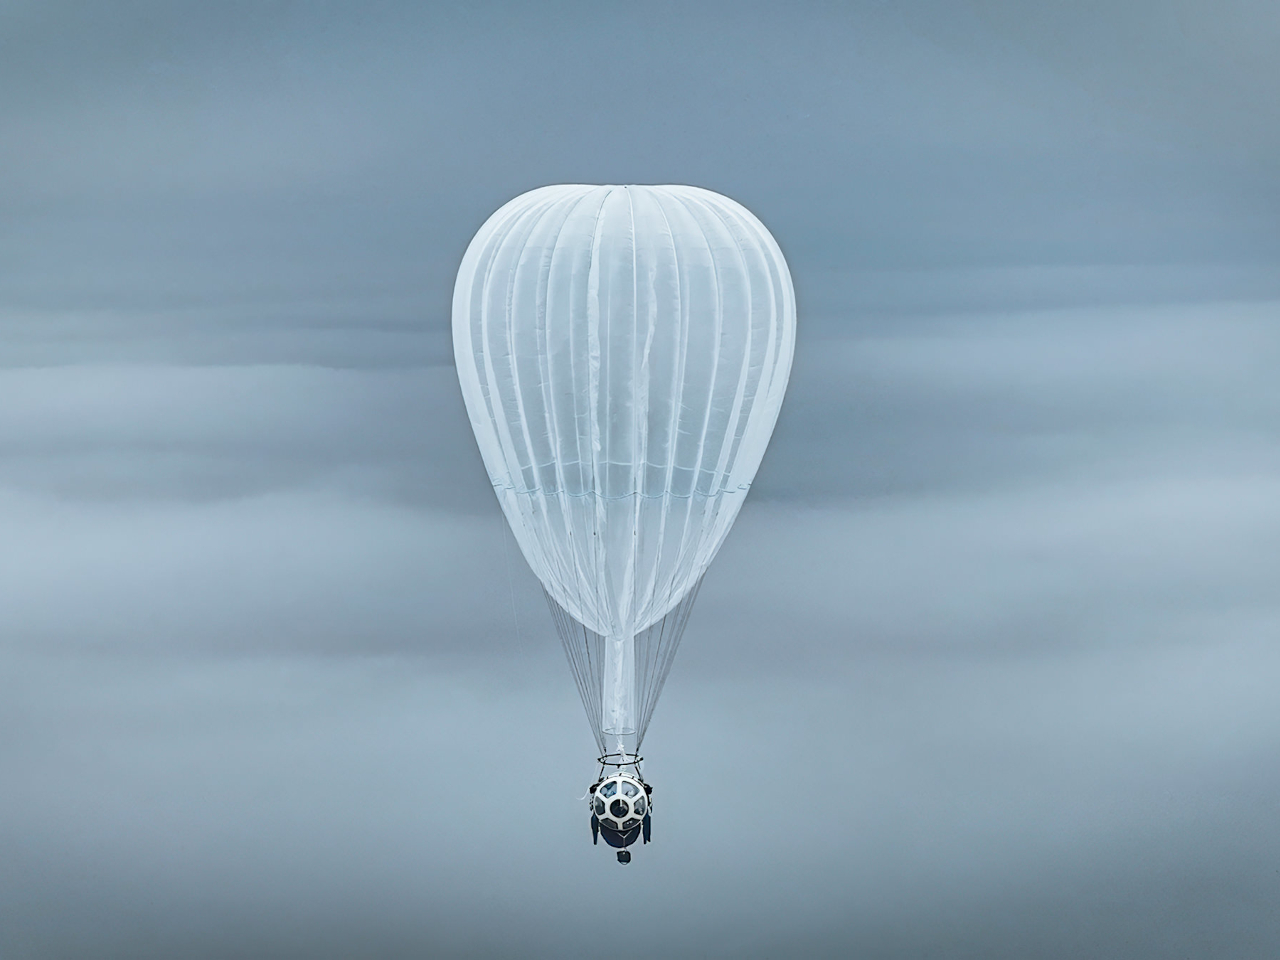 気球で成層圏への遊覧飛行目指す岩谷技研、実機で訓練飛行開始--来夏から就航